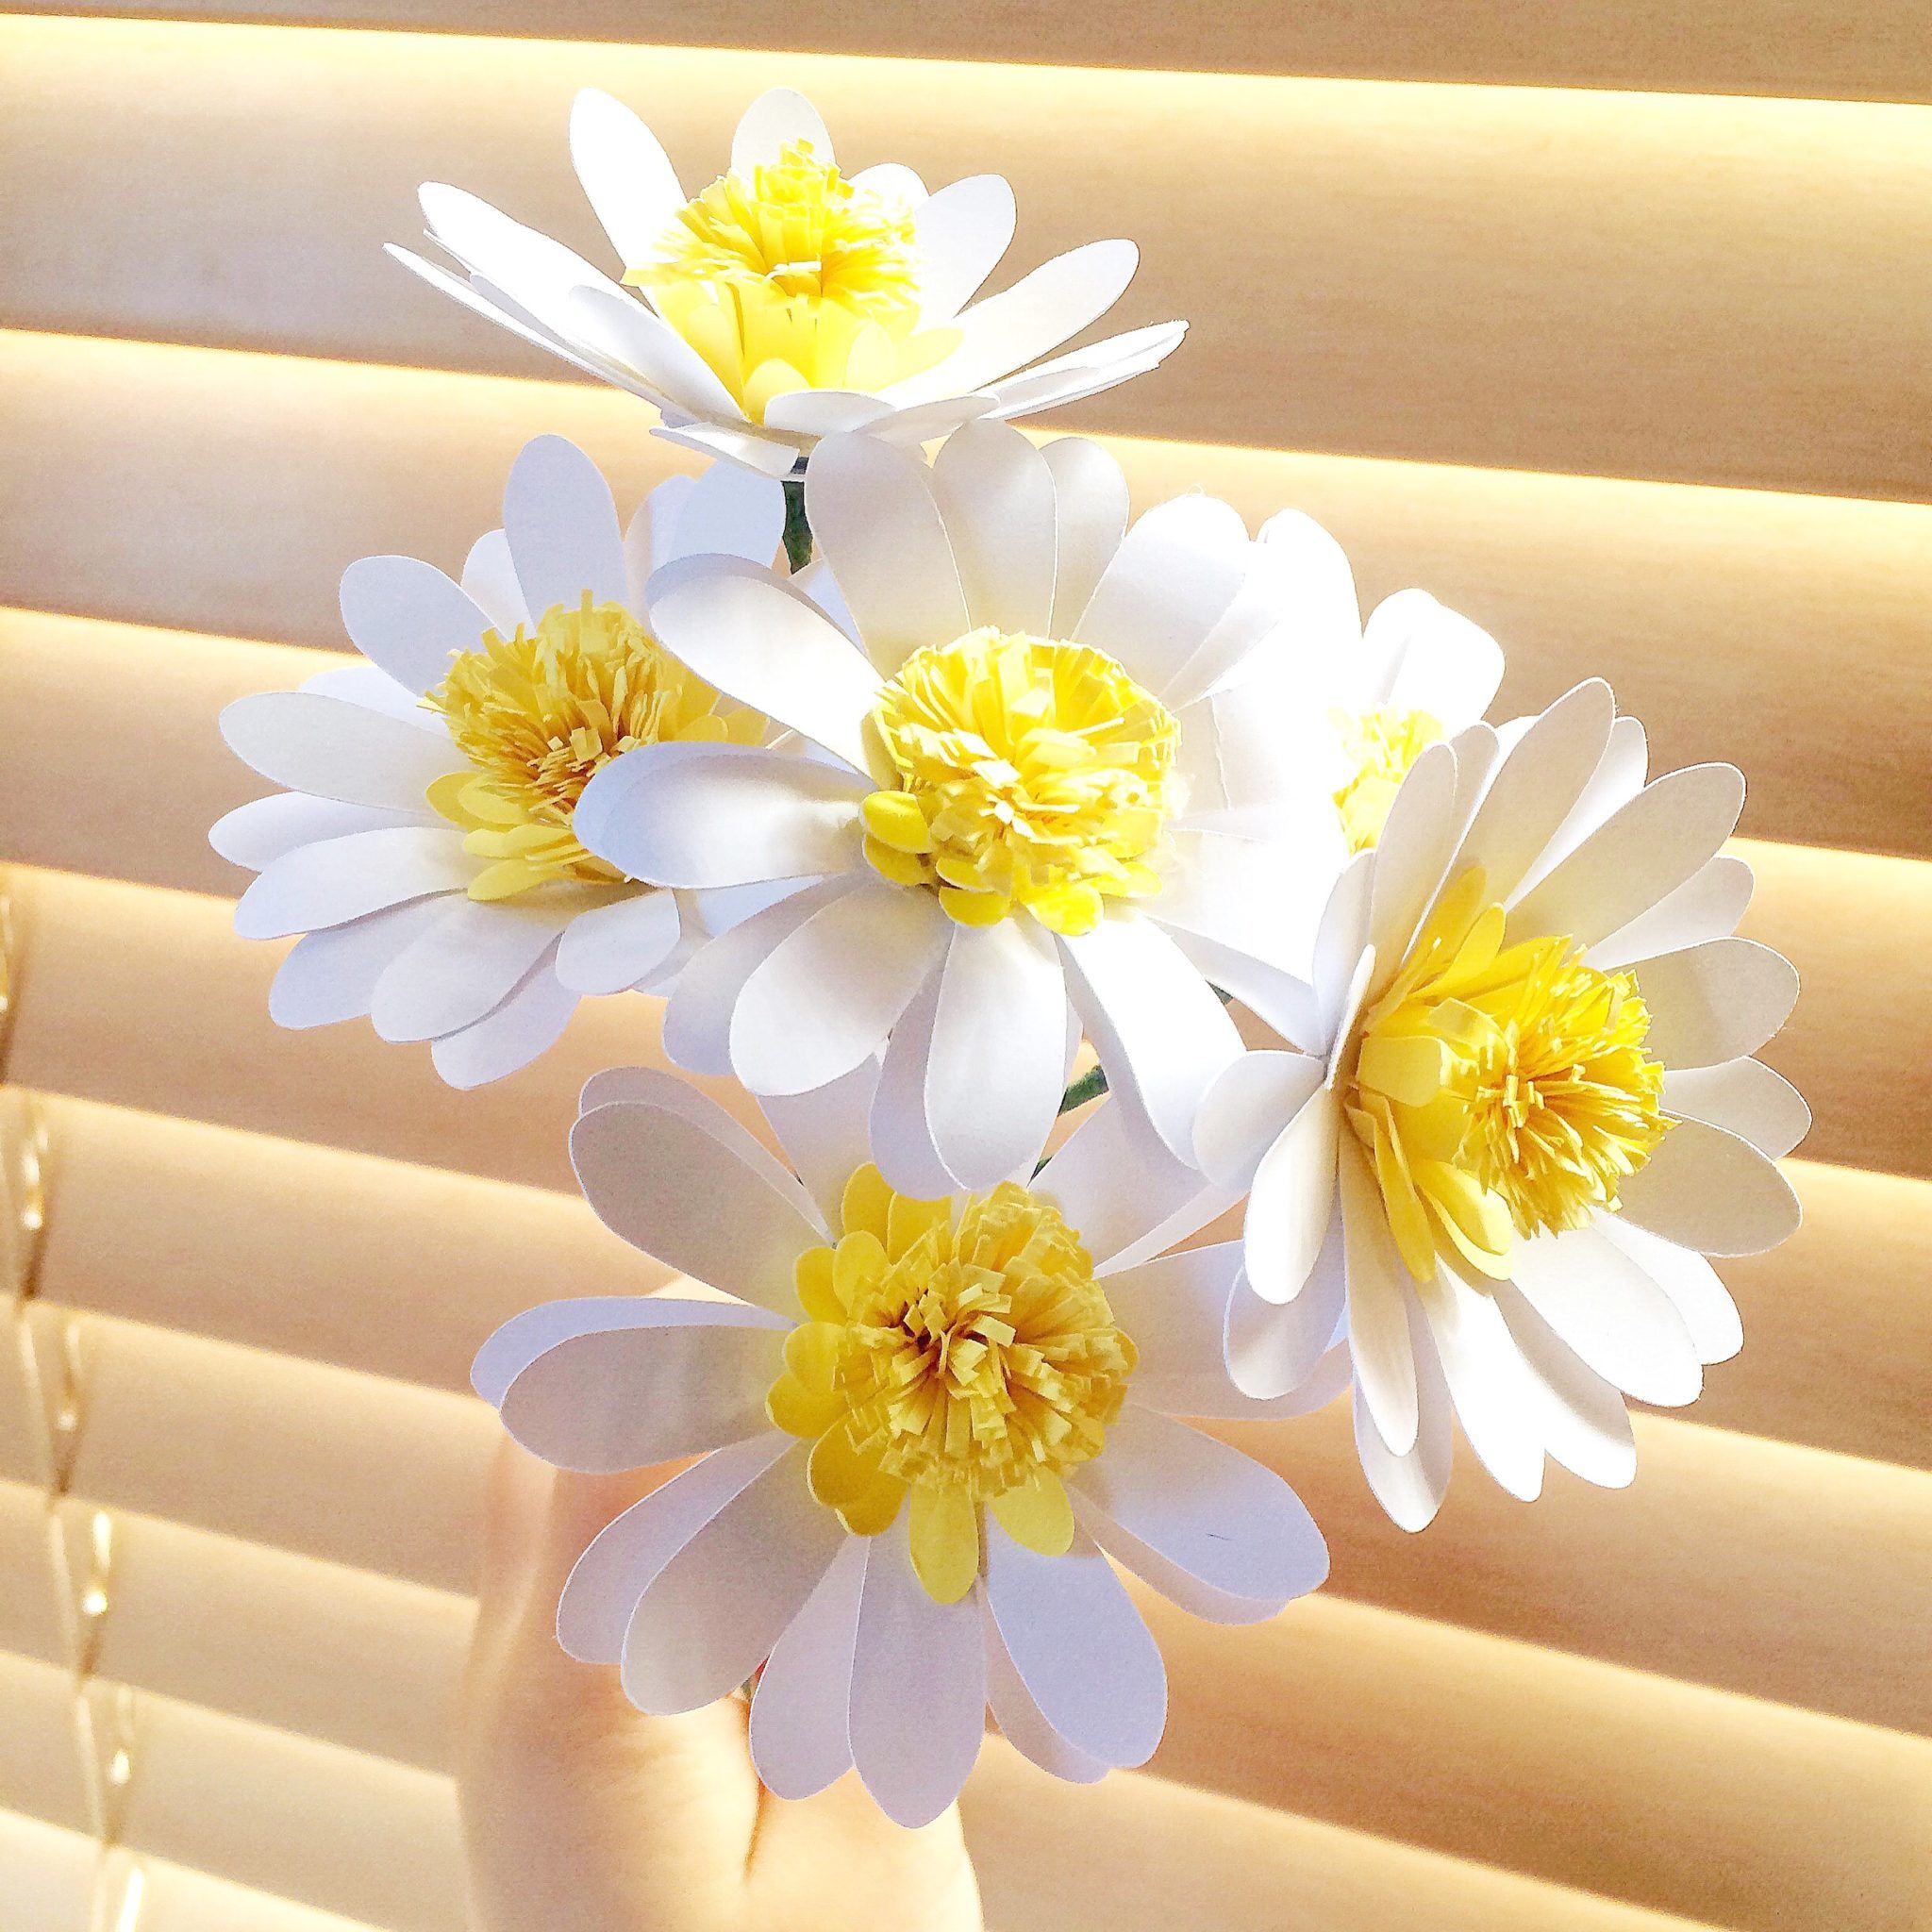 Мастер класс по изготовлению белого цветка из бумаги: Страница не найдена – Благотворительная акция Белый цветок